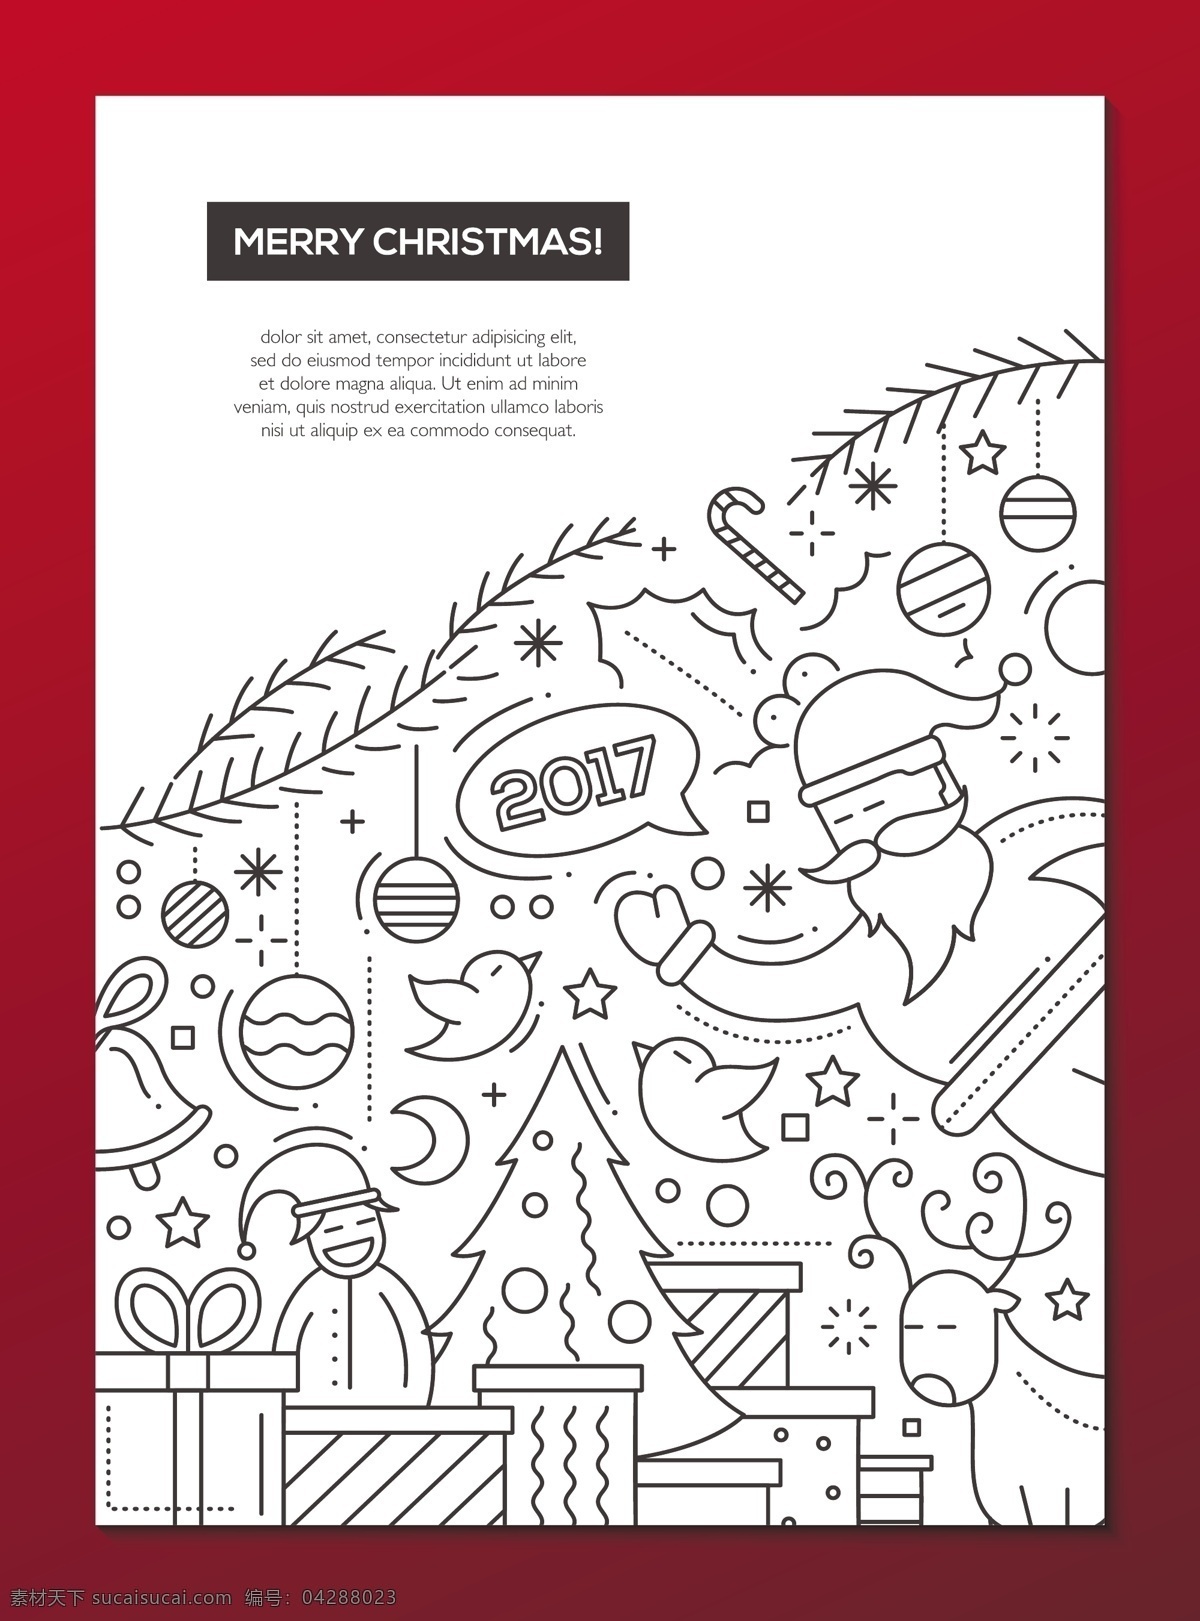 圣诞插画素材 树木 小鸟 节日背景 圣诞节 圣诞素材 节日海报 节日素材 矢量素材